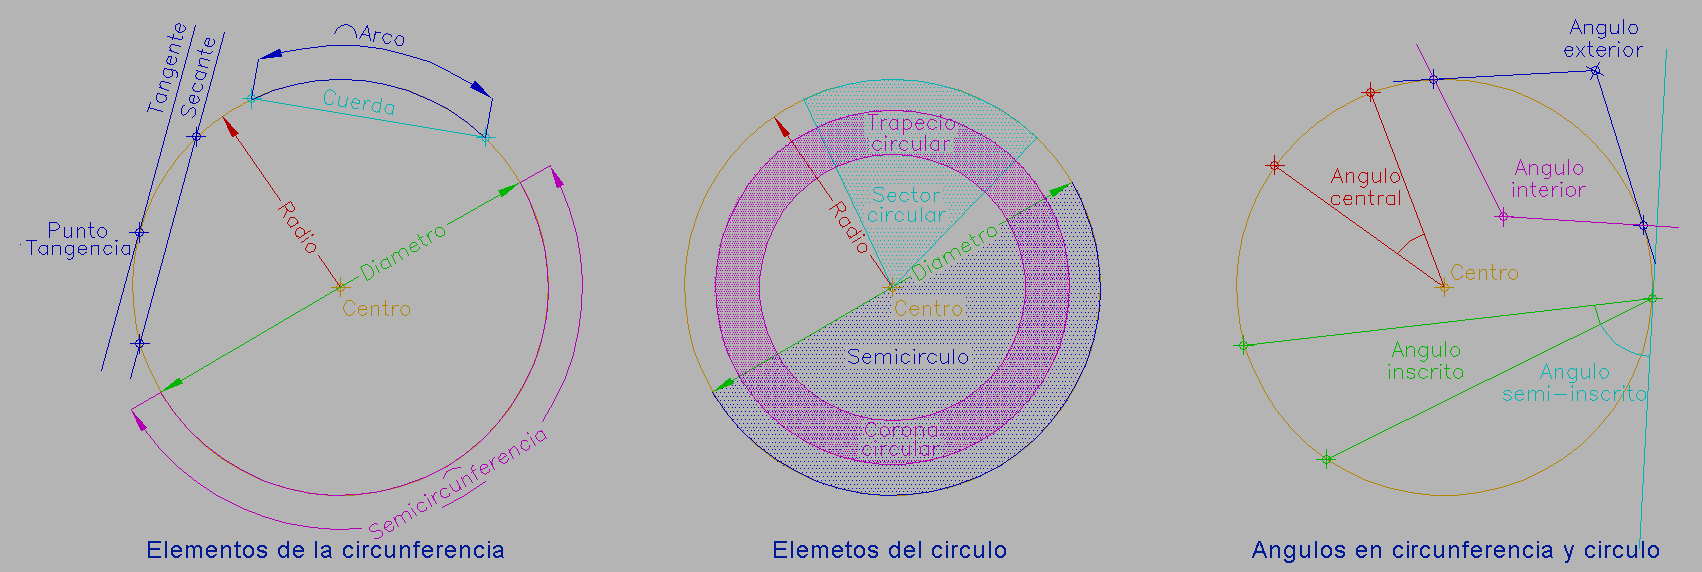 Elementos de la circunferencia y el círculo